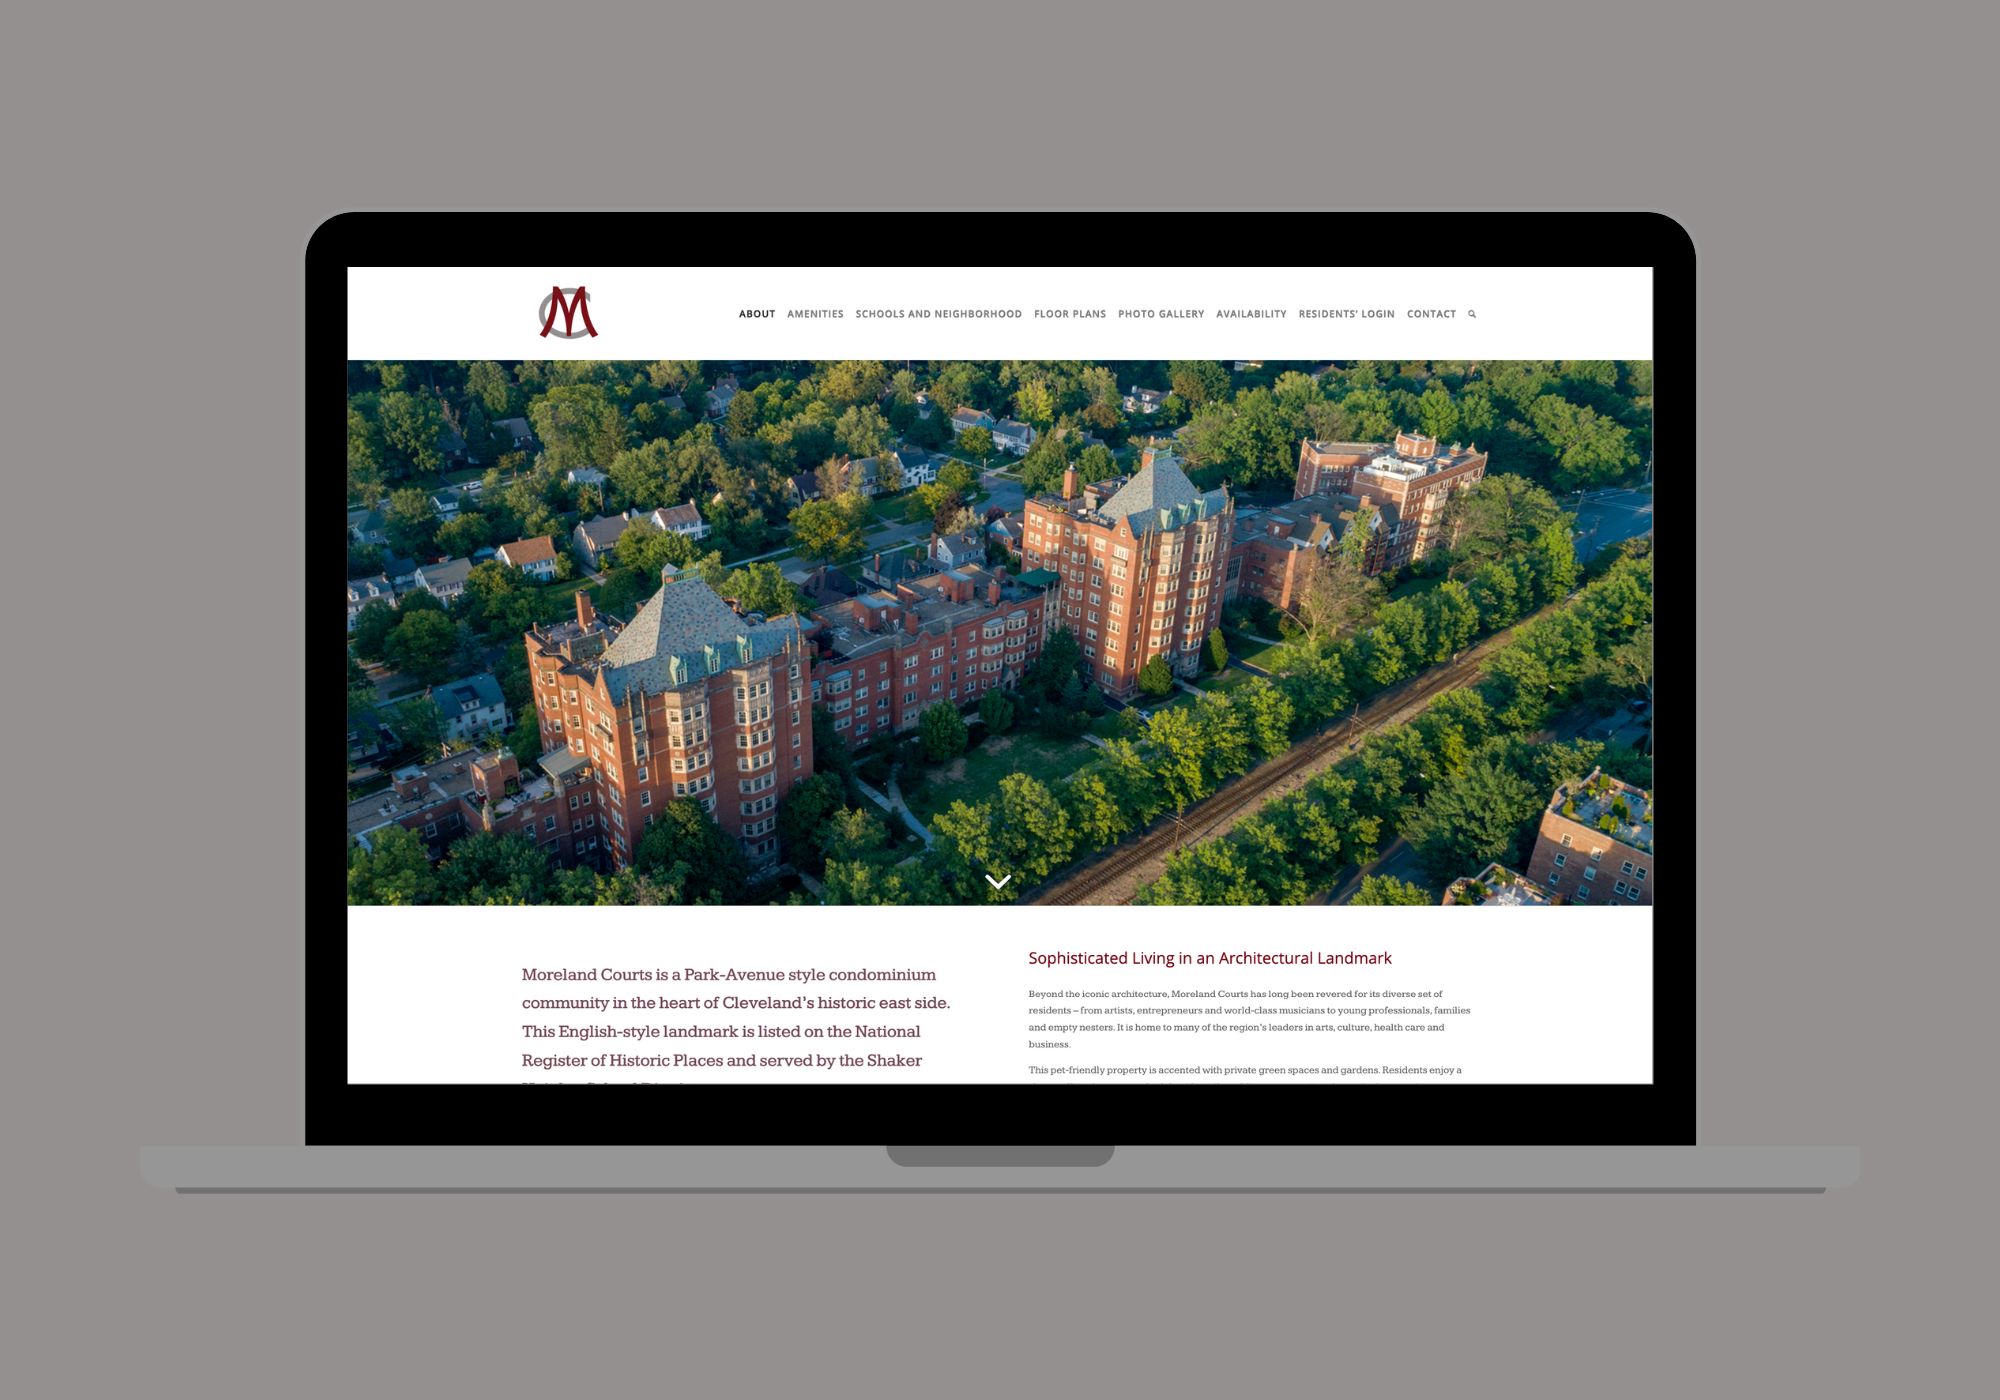 Website designed for Moreland Courts